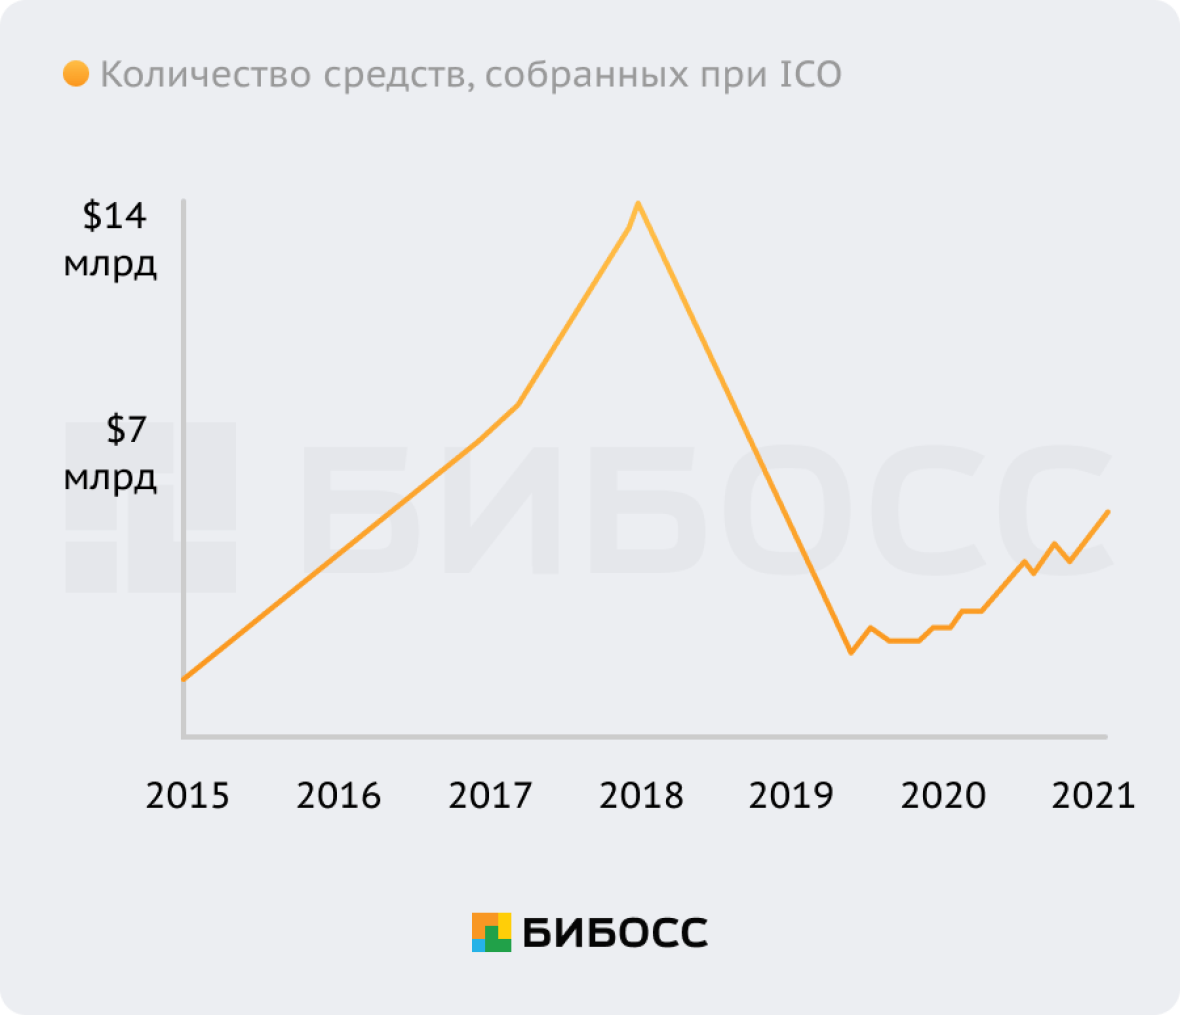 Количество средств, собранных при ICO